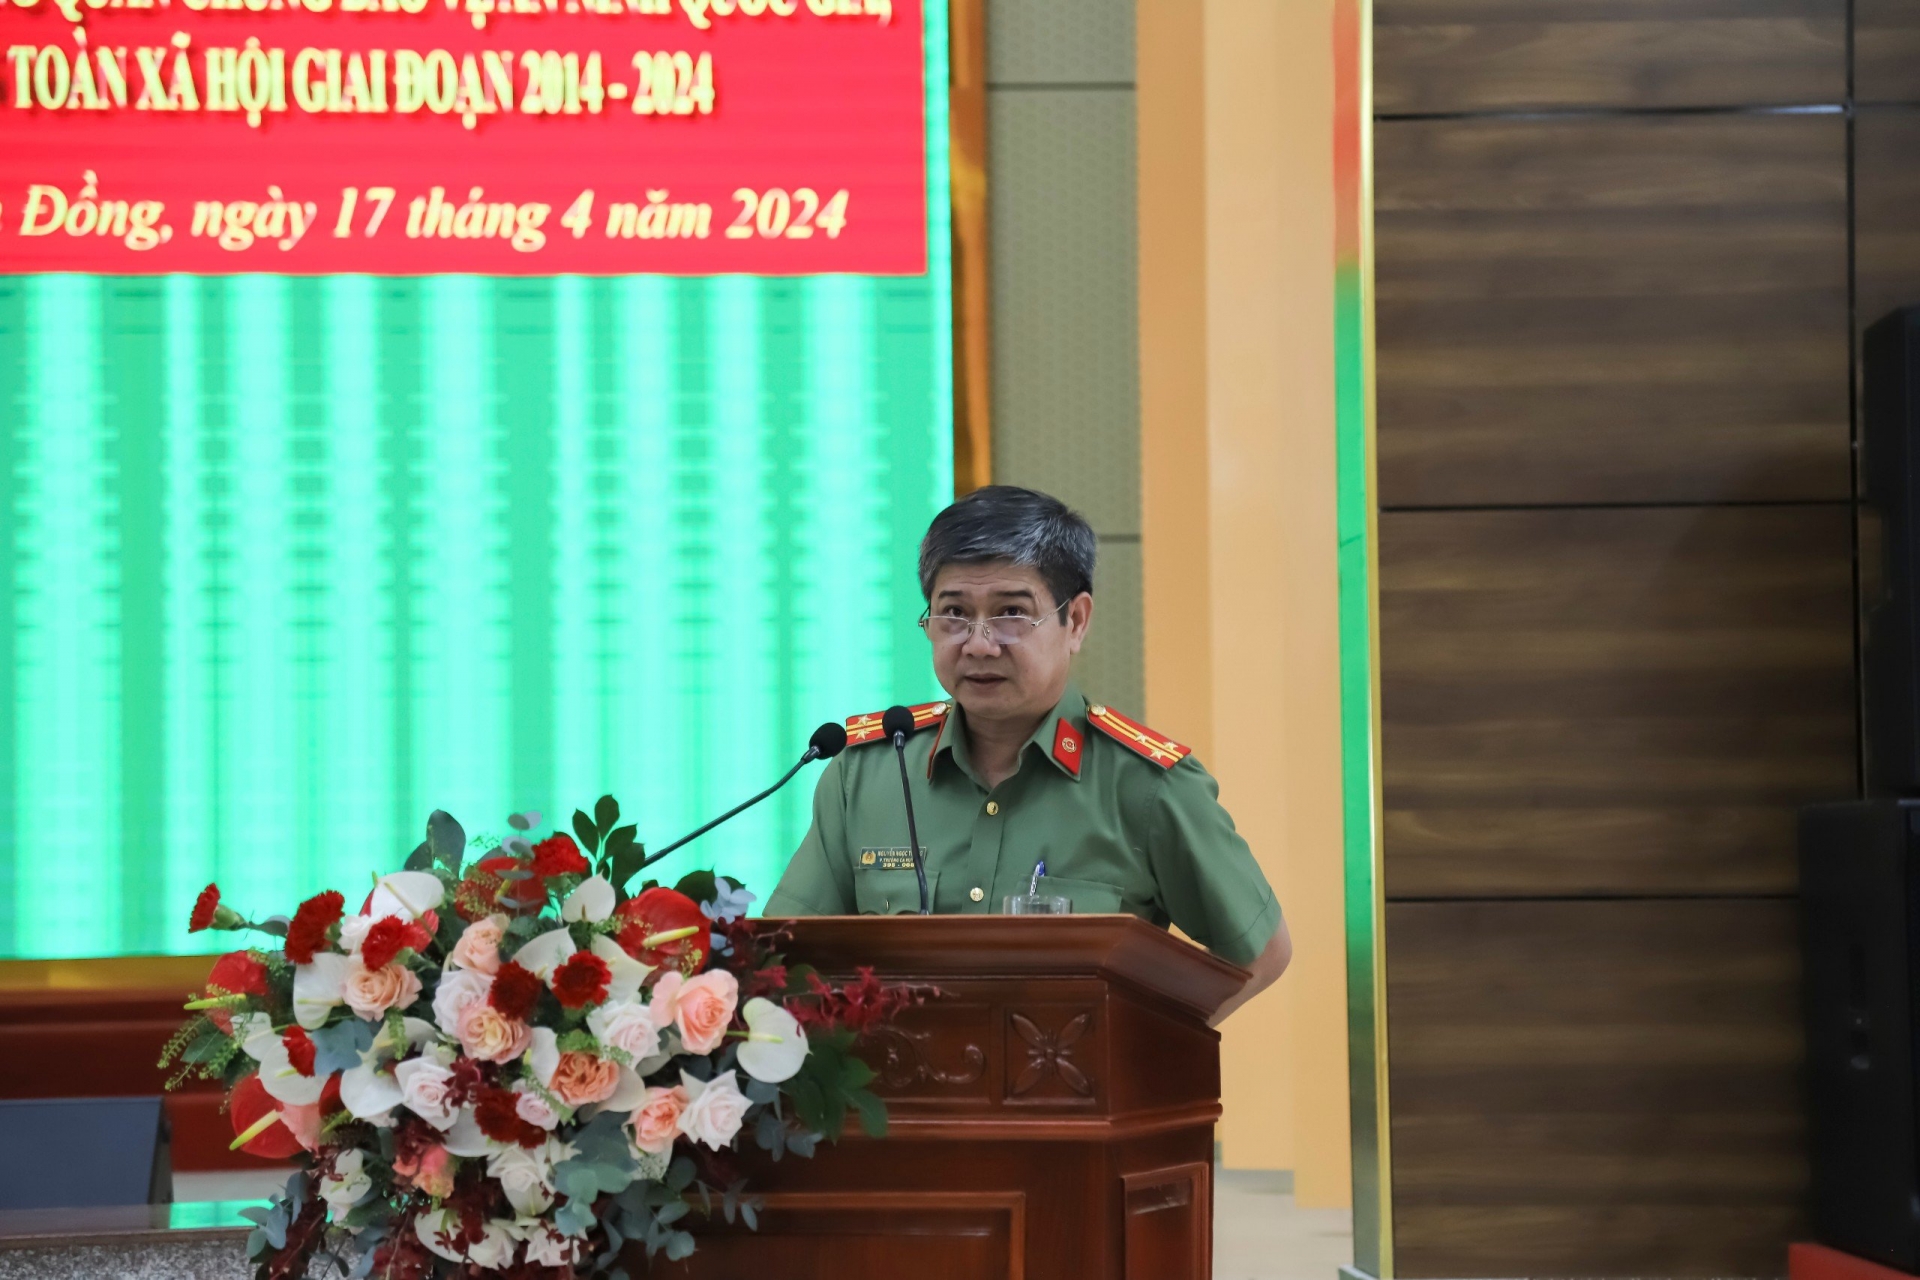 Đại tá Nguyễn Quang Thống - Phó Giám đốc Công an tỉnh hướng dẫn thảo luận tại hội nghị